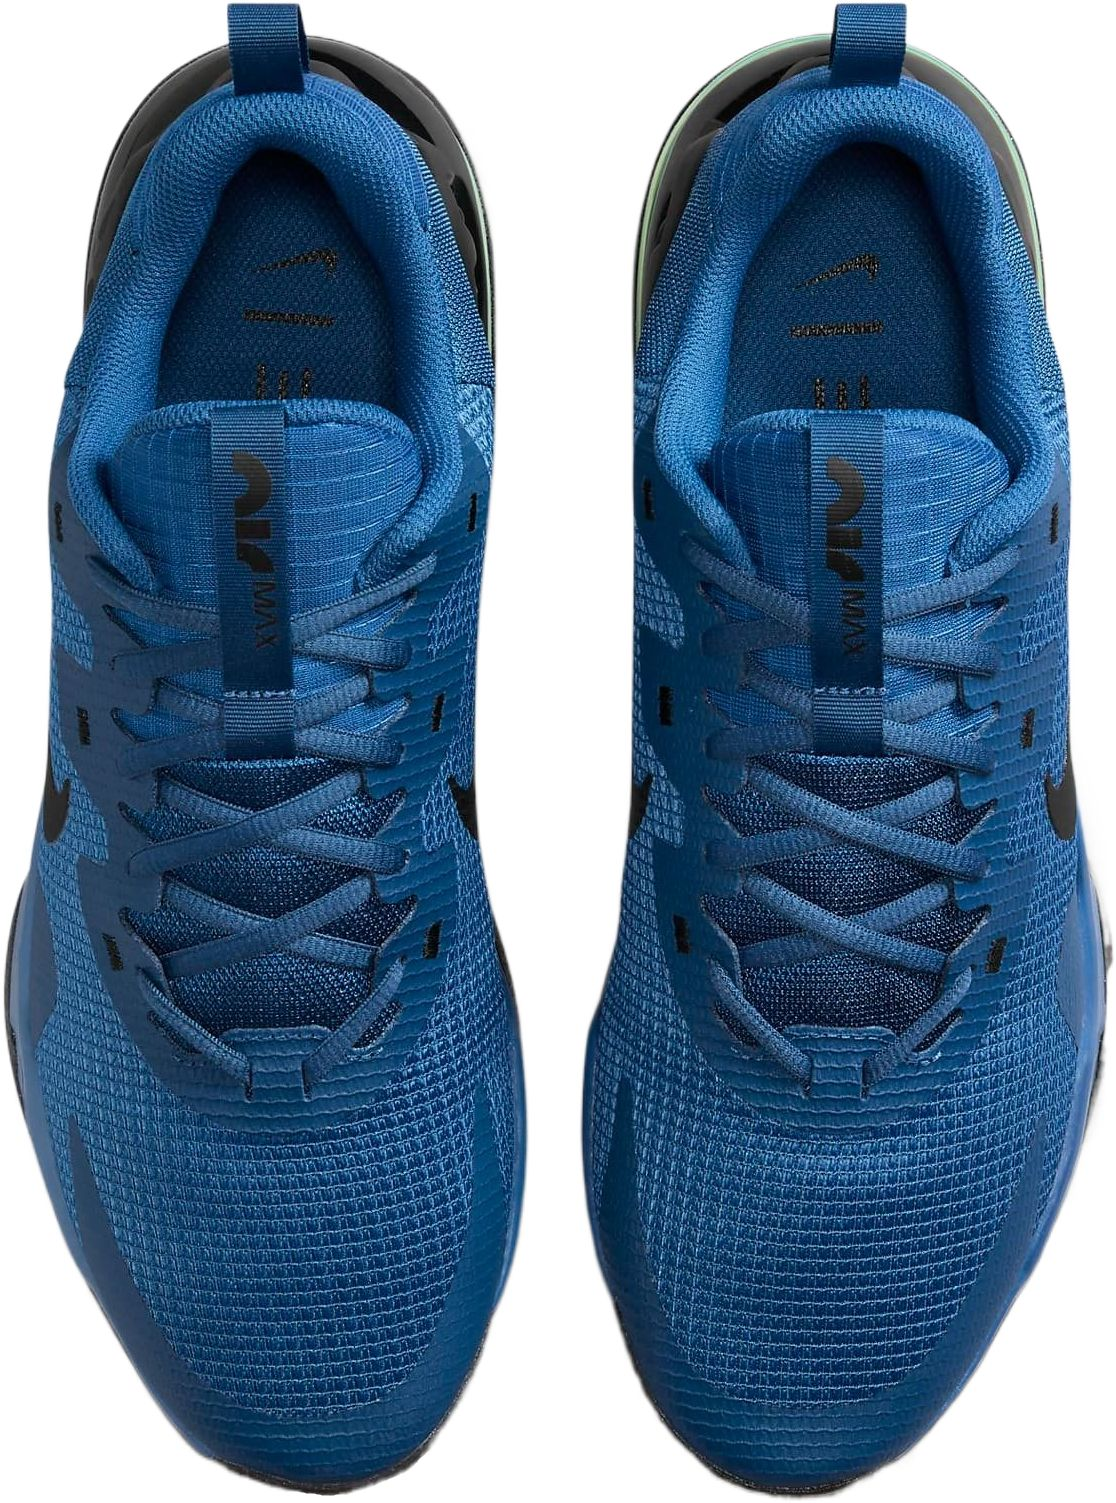 Кроссовки мужские Nike Air Max Alpha Trainer 5 DM0829-403 45 (11 US) синие фото 5